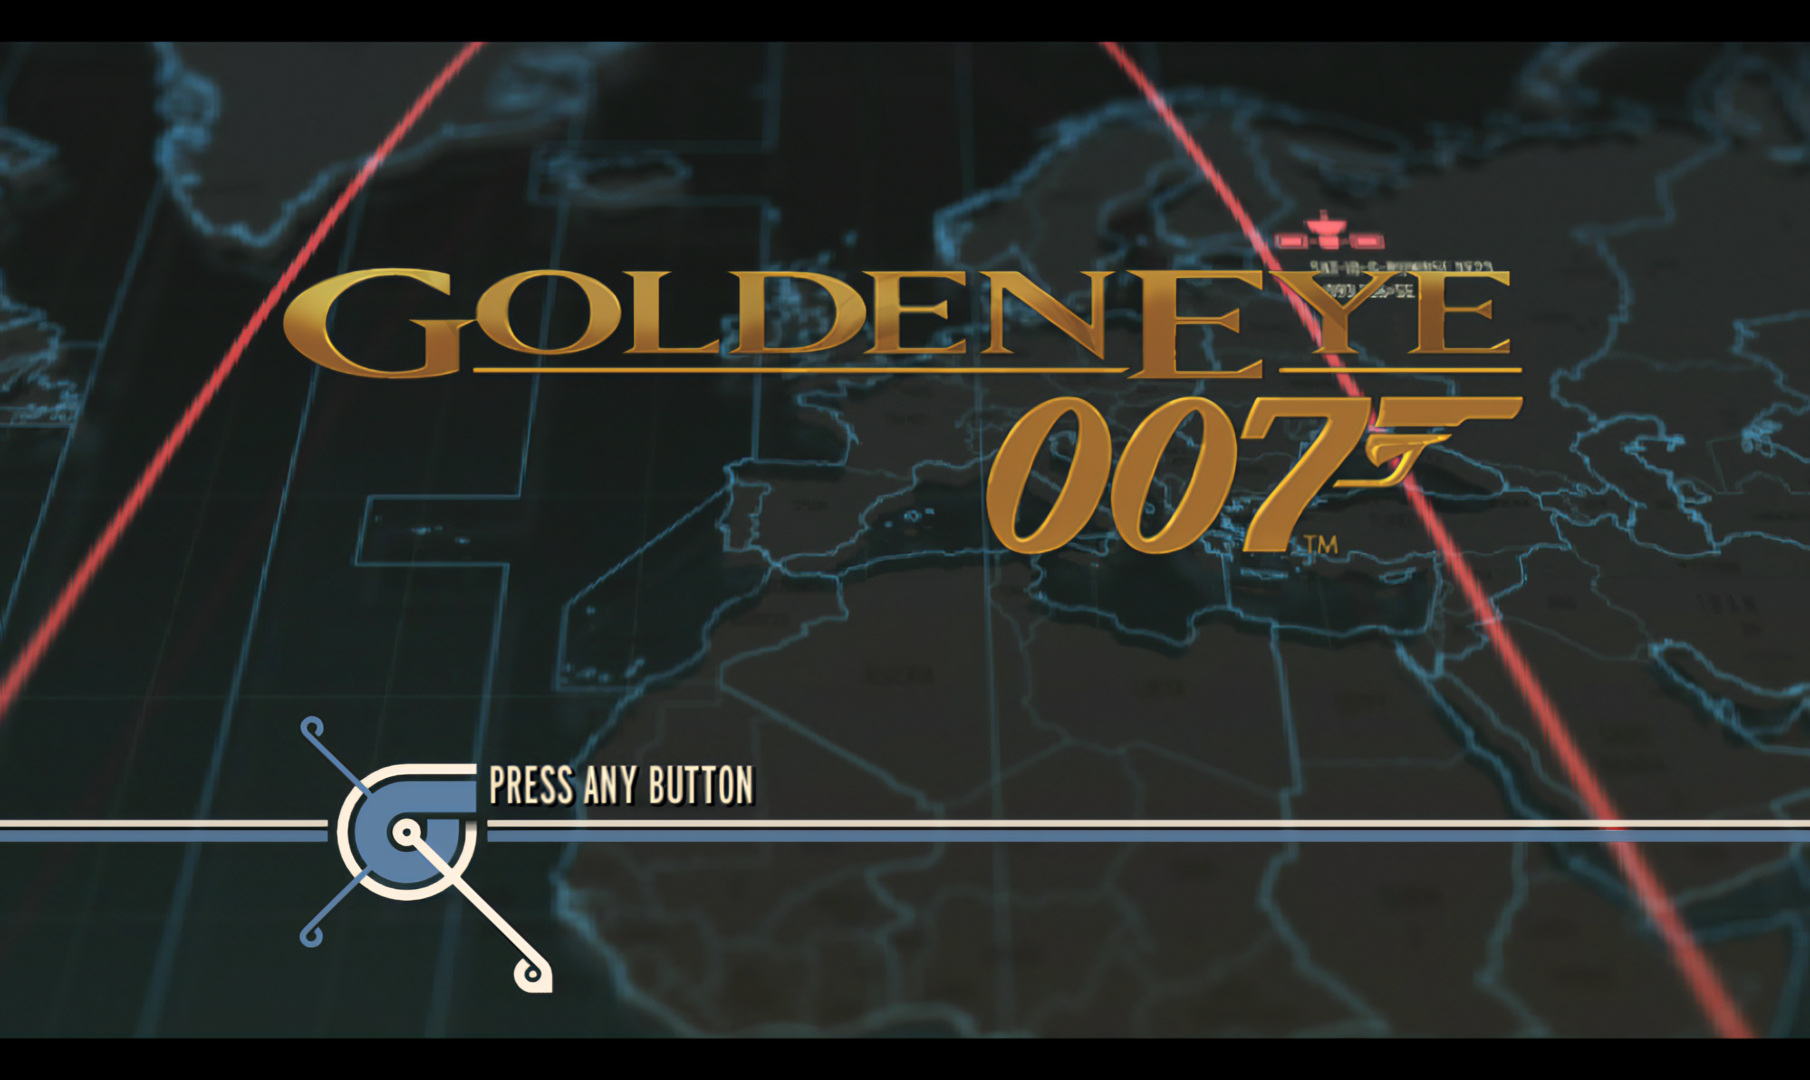 GoldenEye 007 (2010)